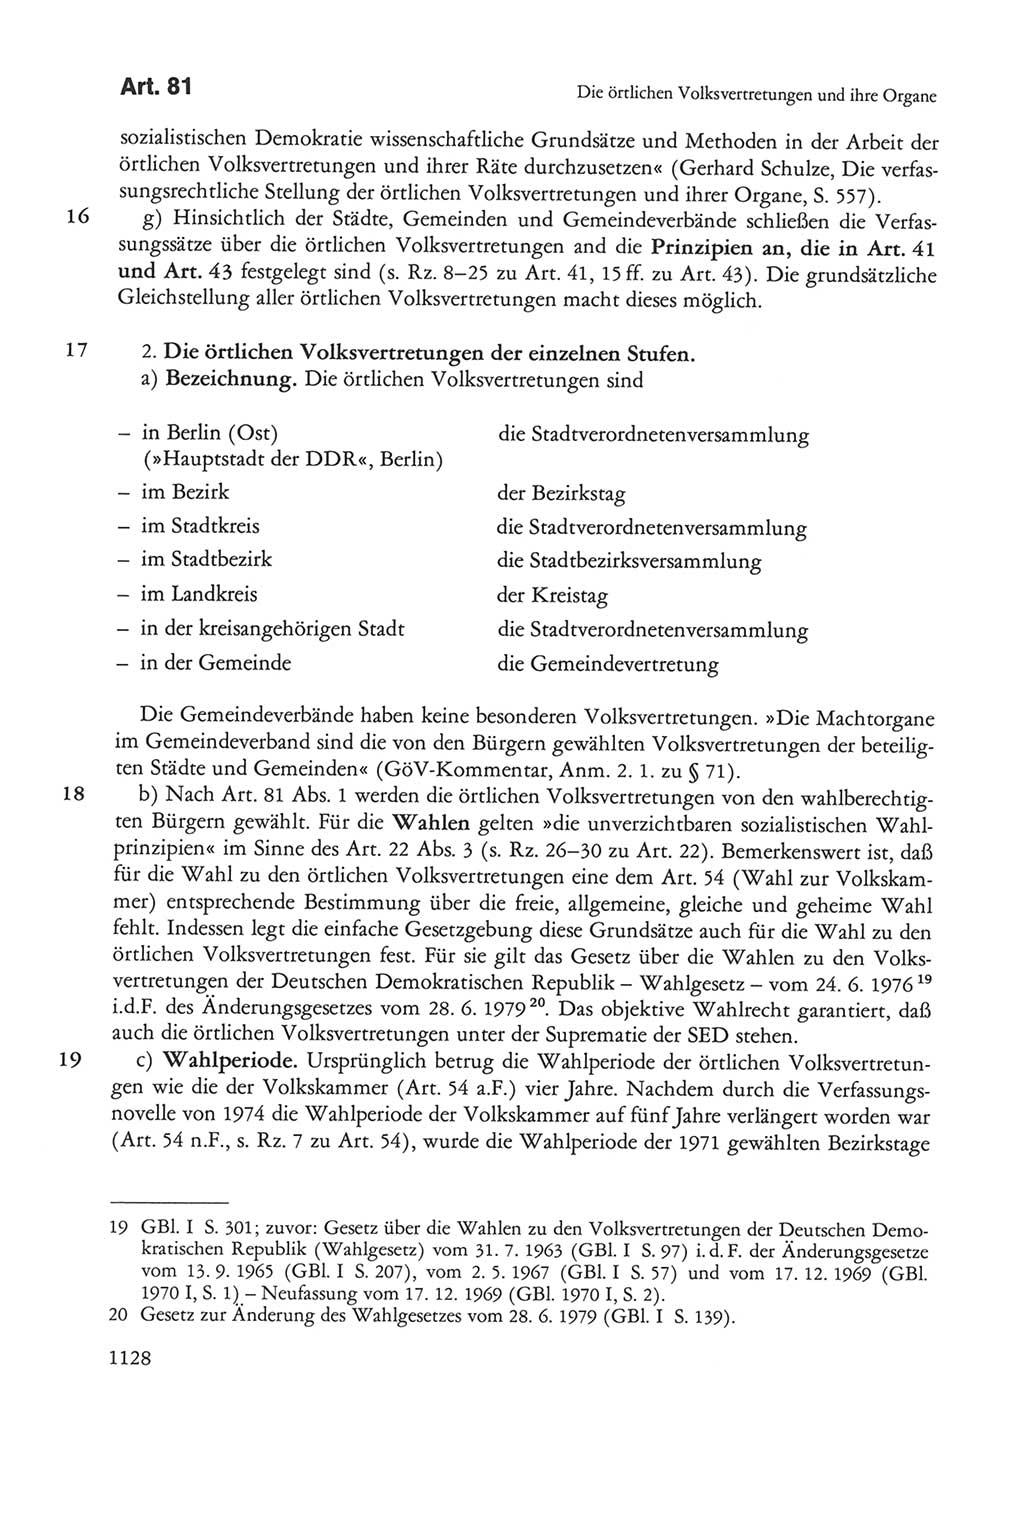 Die sozialistische Verfassung der Deutschen Demokratischen Republik (DDR), Kommentar 1982, Seite 1128 (Soz. Verf. DDR Komm. 1982, S. 1128)